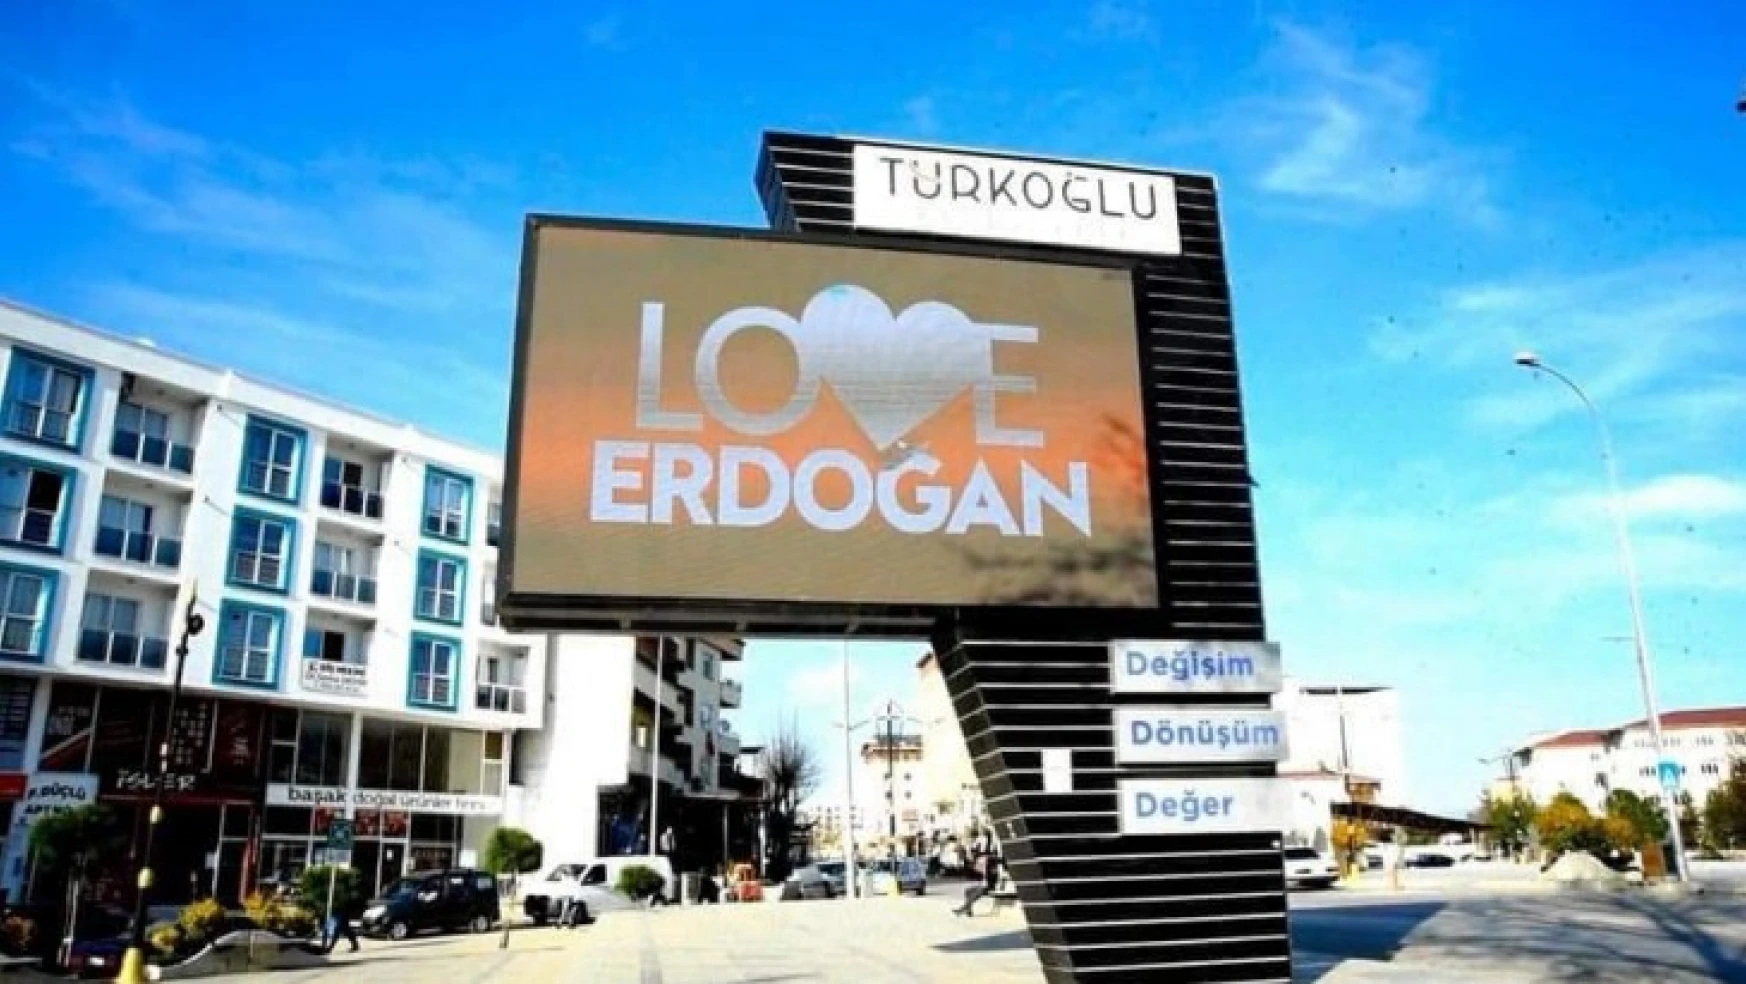 Türkoğlu'ndan ABD'ye cevap: 'Love Erdoğan'